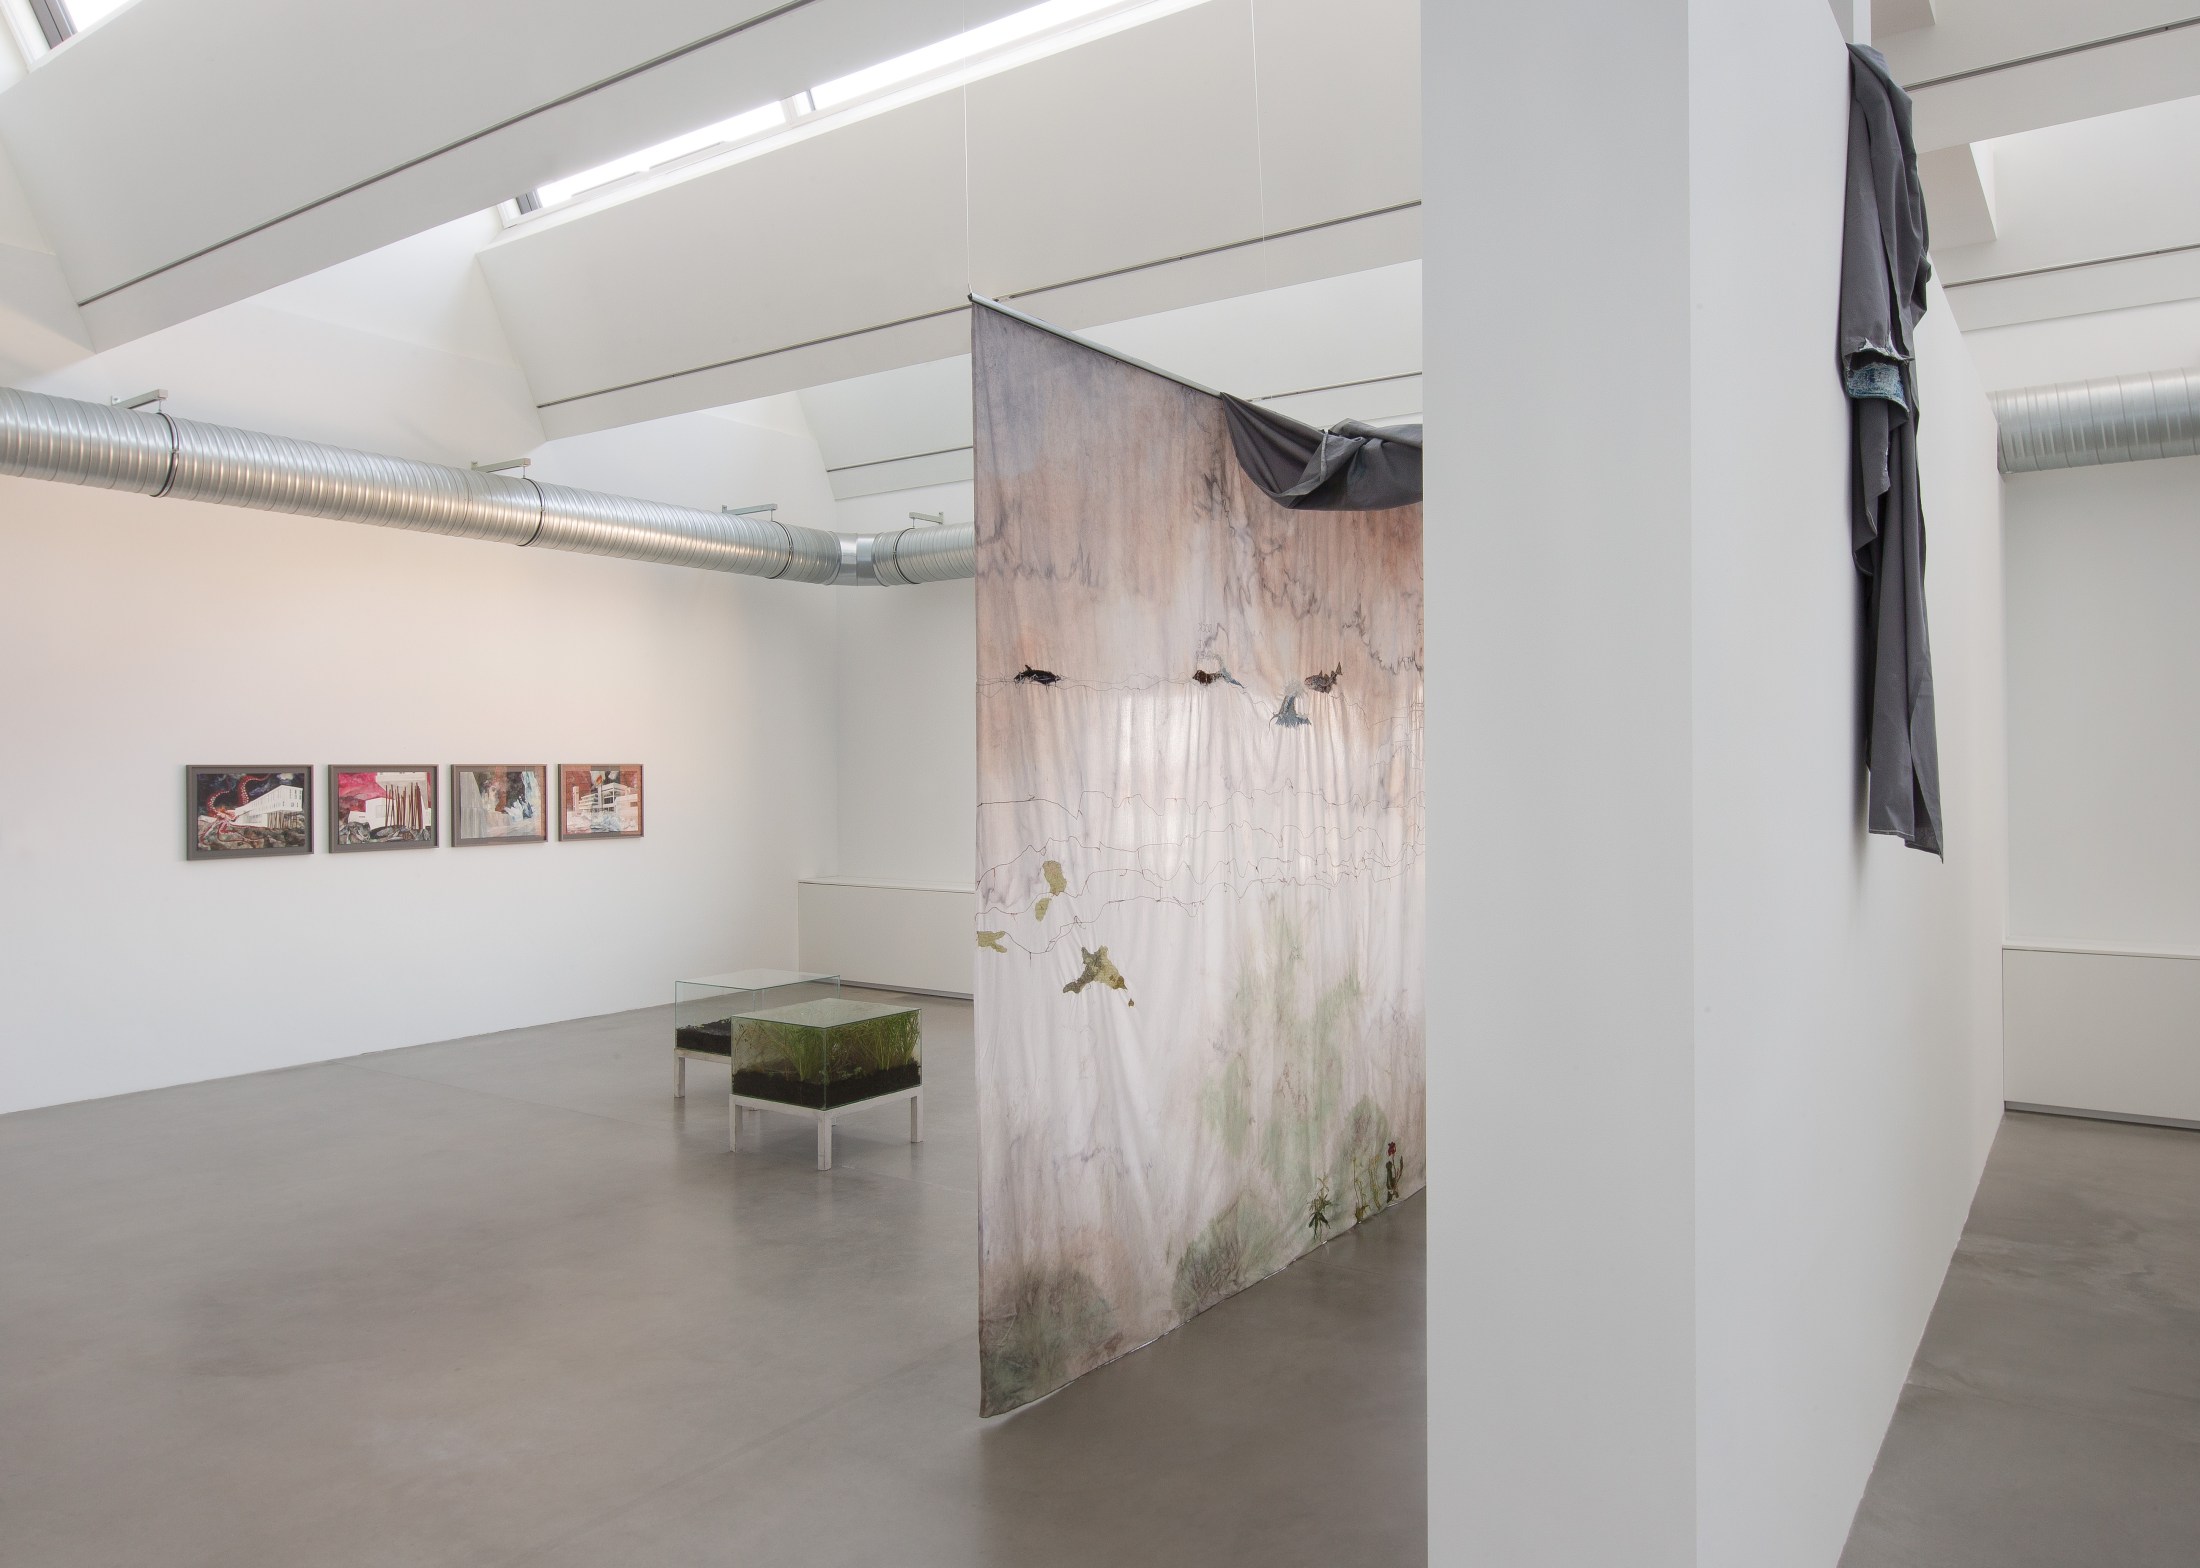 Exhibition view: Isa Melsheimer, Der unerfreuliche Zustand der Textur, Maschinenhaus M2, KINDL – Centre for Contemporary Art, Berlin, 2020. Photo © Oliver Mark